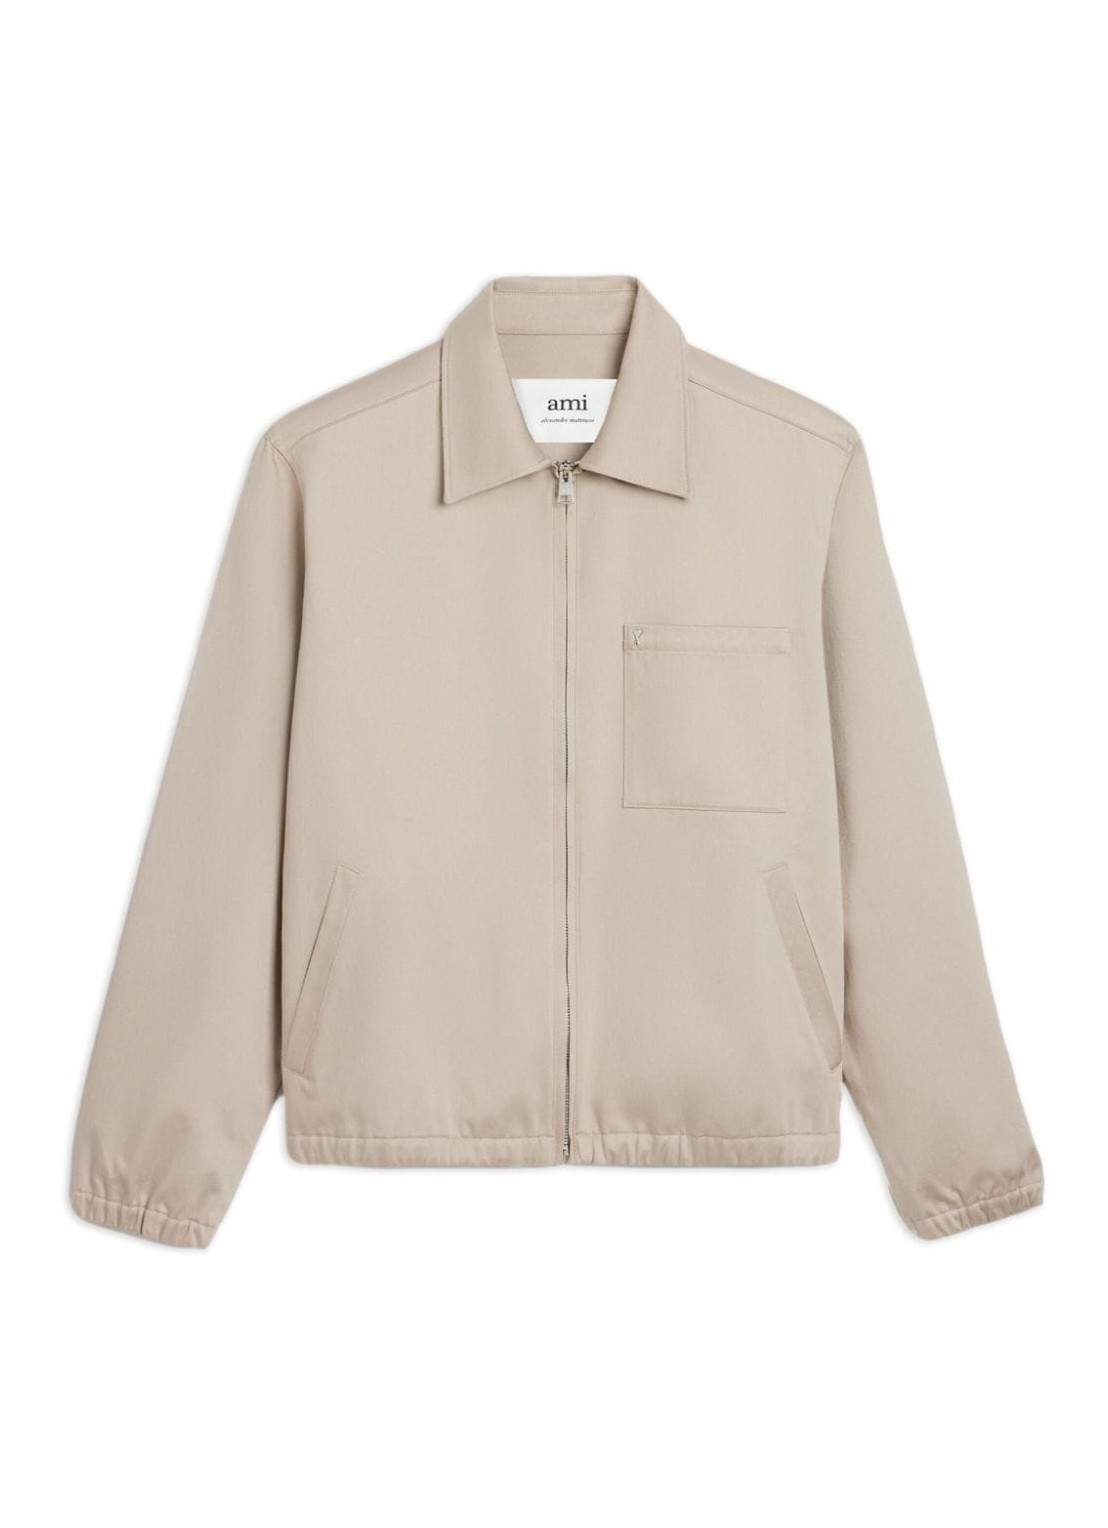 Outerwear ami outerwear manadc zipped jacket - hjk053co0009 271 talla beige
 